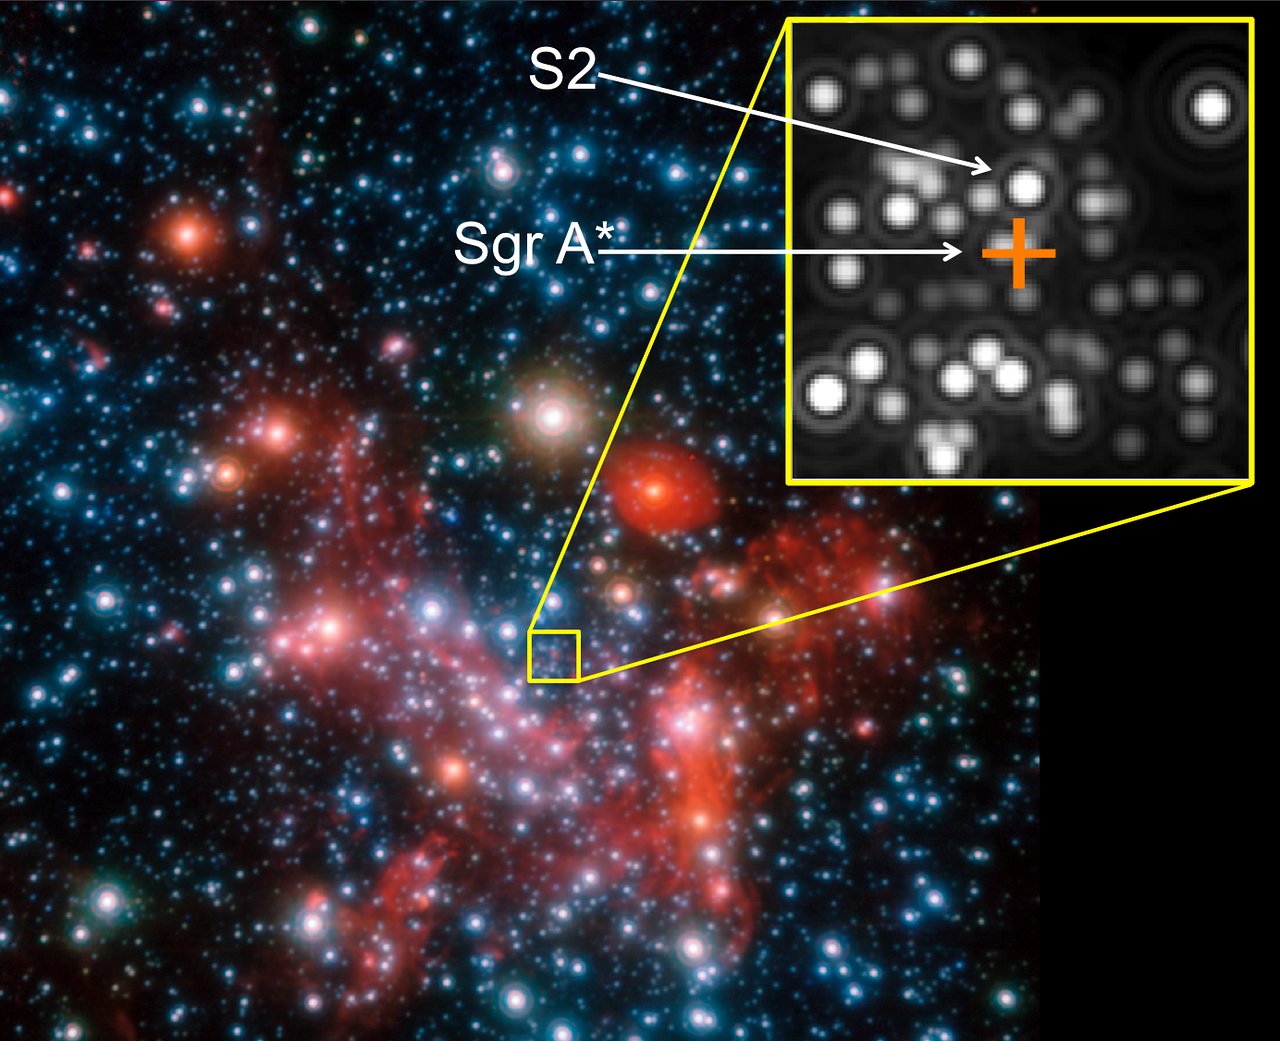 Las partes centrales de la Vía Láctea tal y como se observan en el infrarrojo cercano con el instrumento NACO del Very Large Telescope de ESO. La posición del centro, que alberga el agujero negro (invisible) conocido como Sgr A *, con una masa de 4 millones de veces la del Sol, está marcada con una cruz naranja. Crédito: ESO/MPE/S. Gillessen et al.